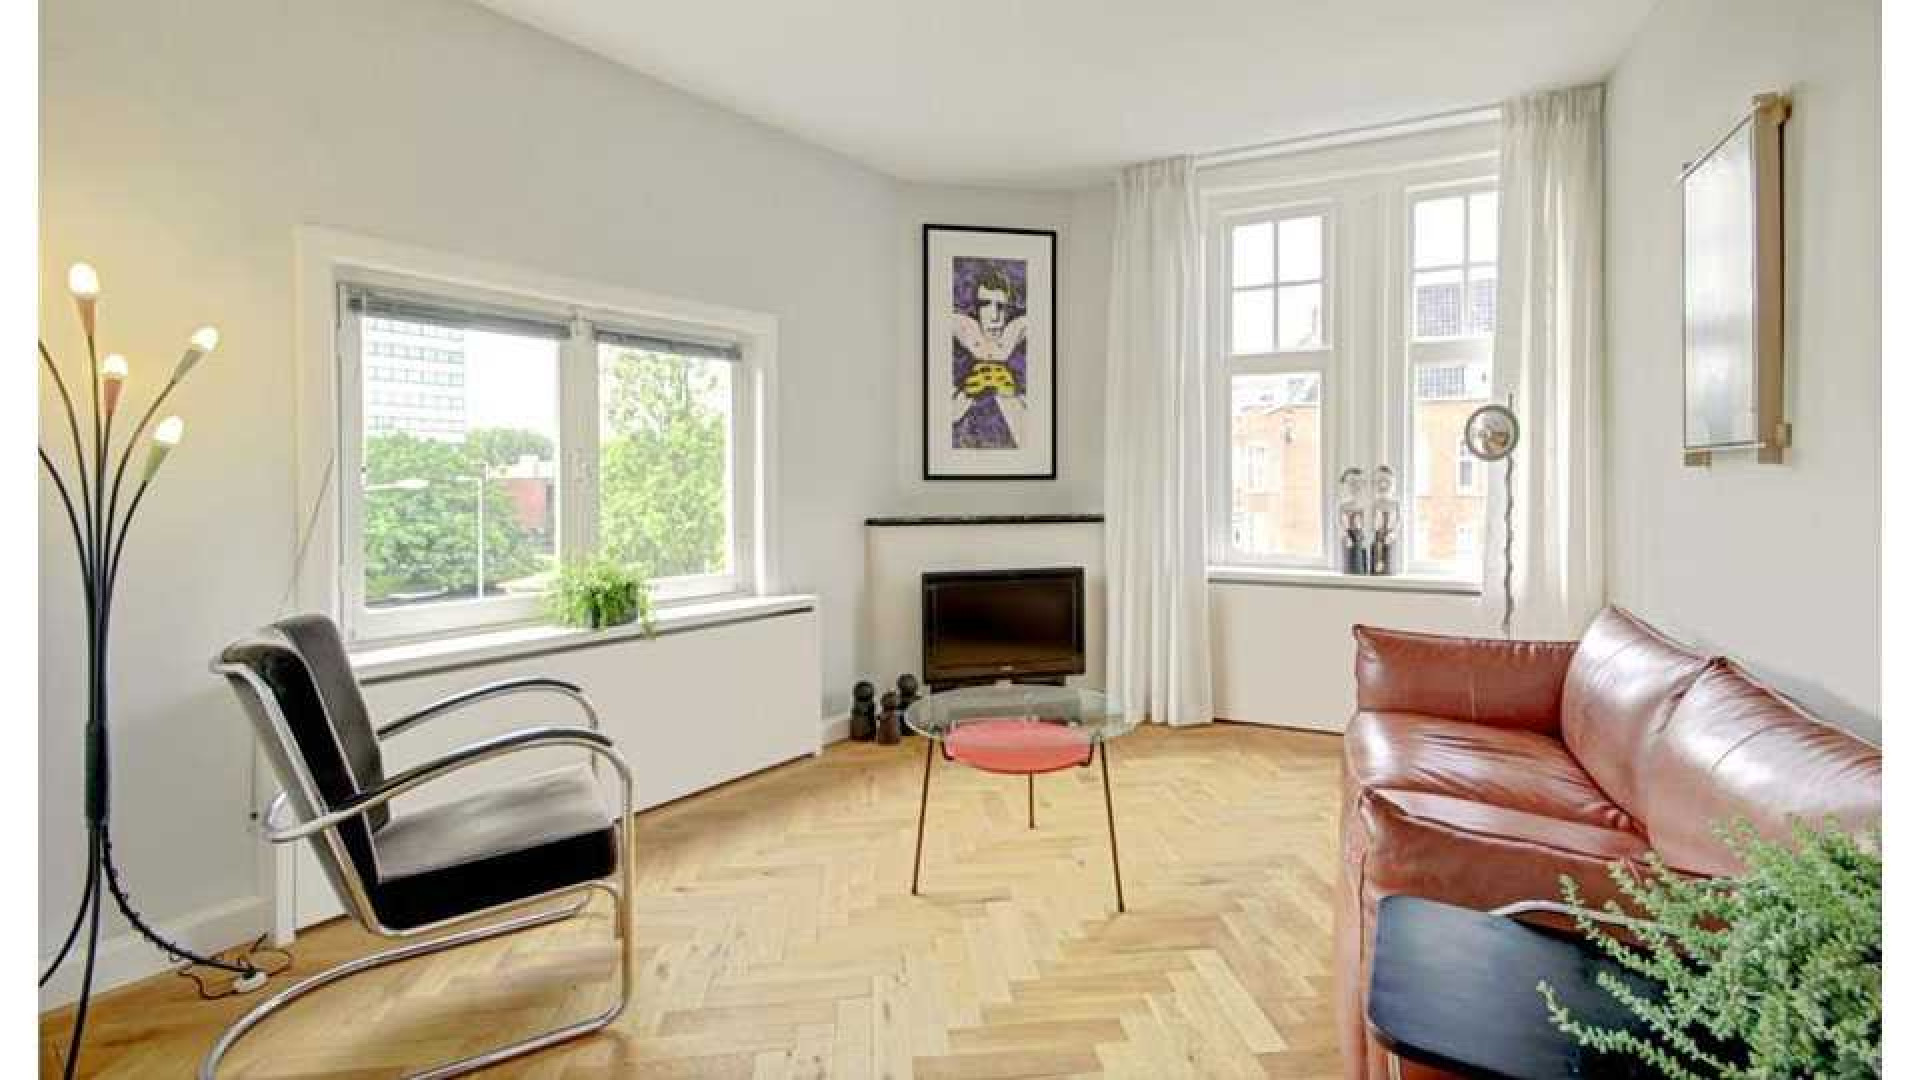 Flikken Maastricht acteur Victor Reinier koopt luxe appartement in Amsterdam Zuid. Zie foto's 5